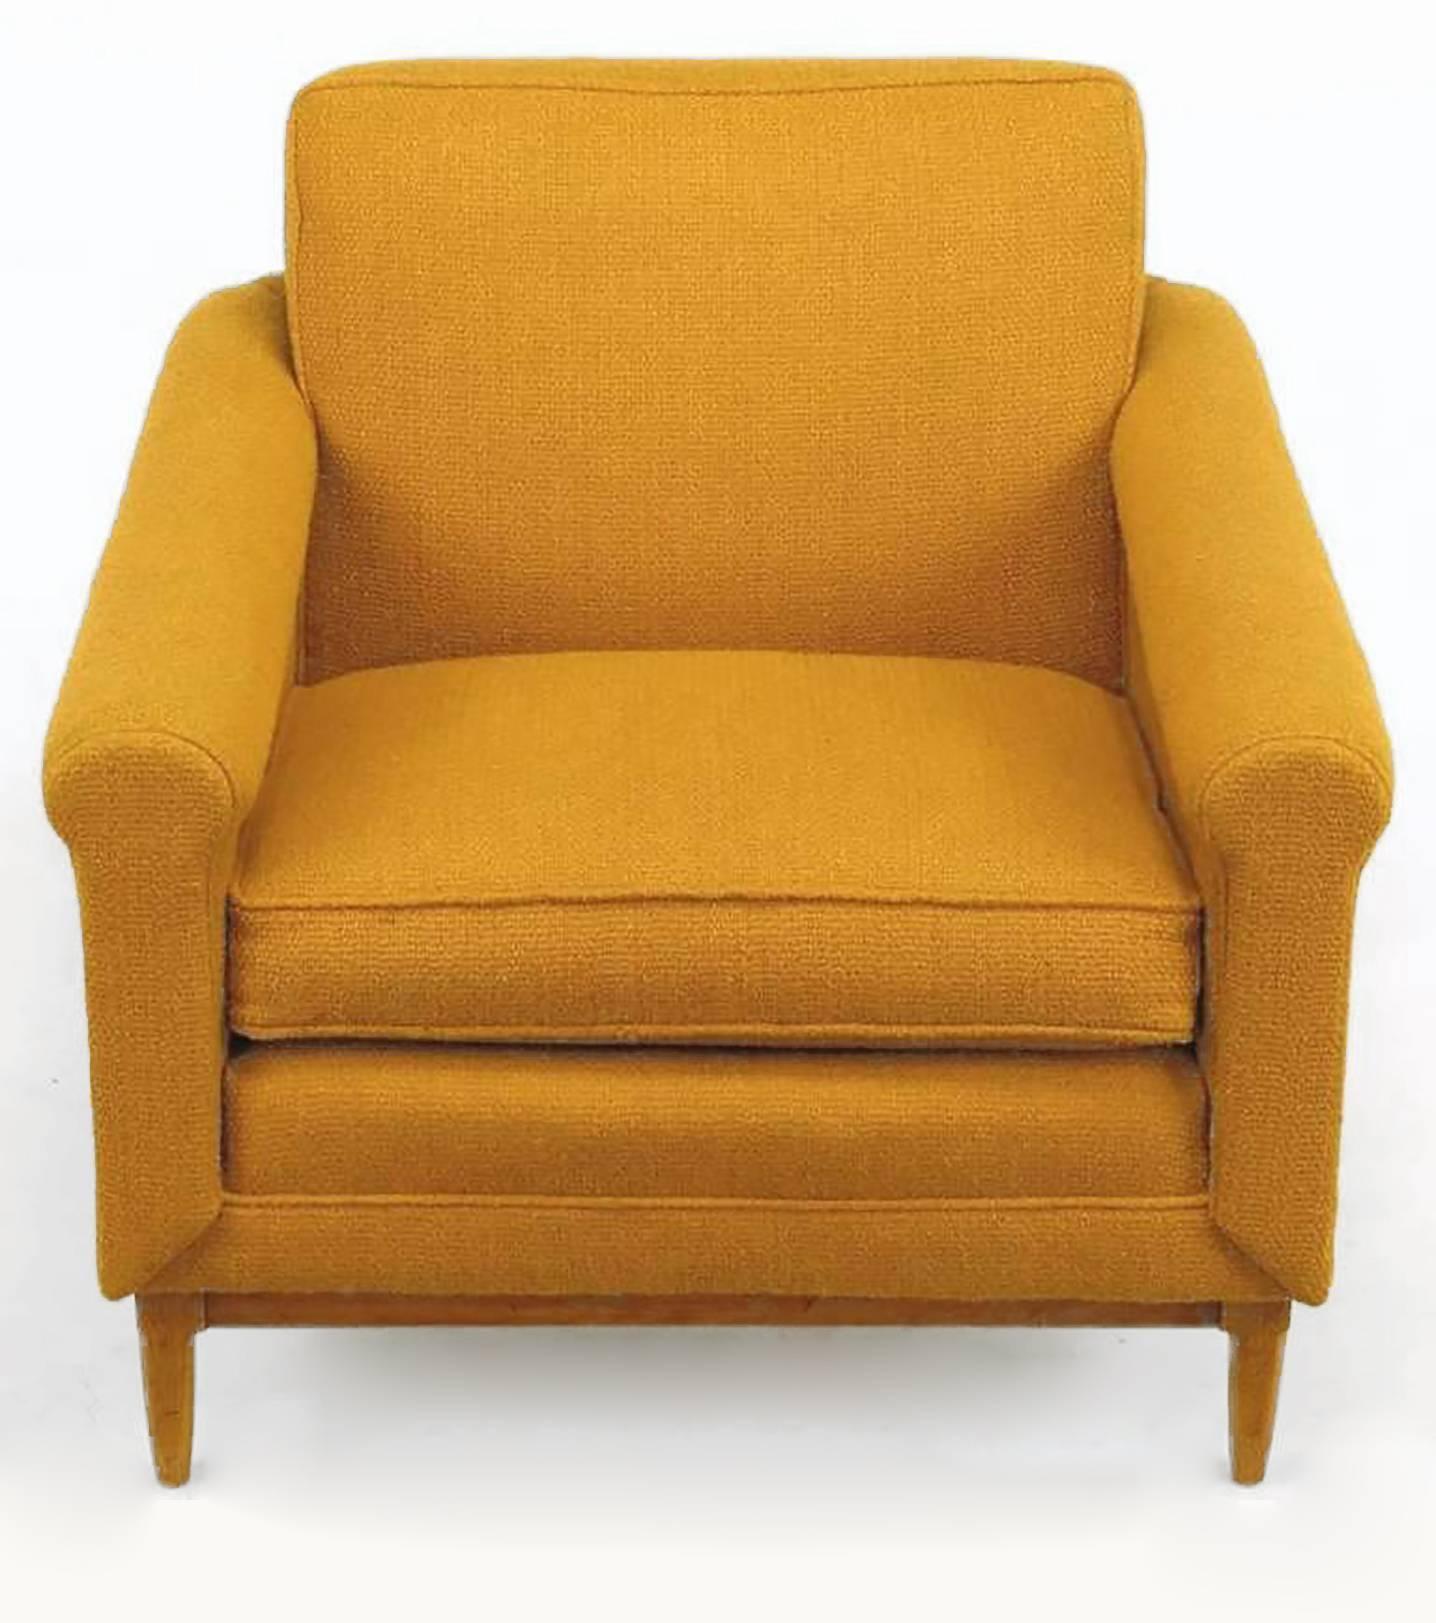 Ein ungewöhnlich gestalteter Stuhl mit Ottomane in der Art der Dunbar-Entwürfe von Edward Wormley. Die röhrenförmigen, bernsteinfarbenen, gepolsterten Armlehnen verjüngen sich und umgeben die Rückenlehne dieses äußerst bequemen Clubsessels. Das